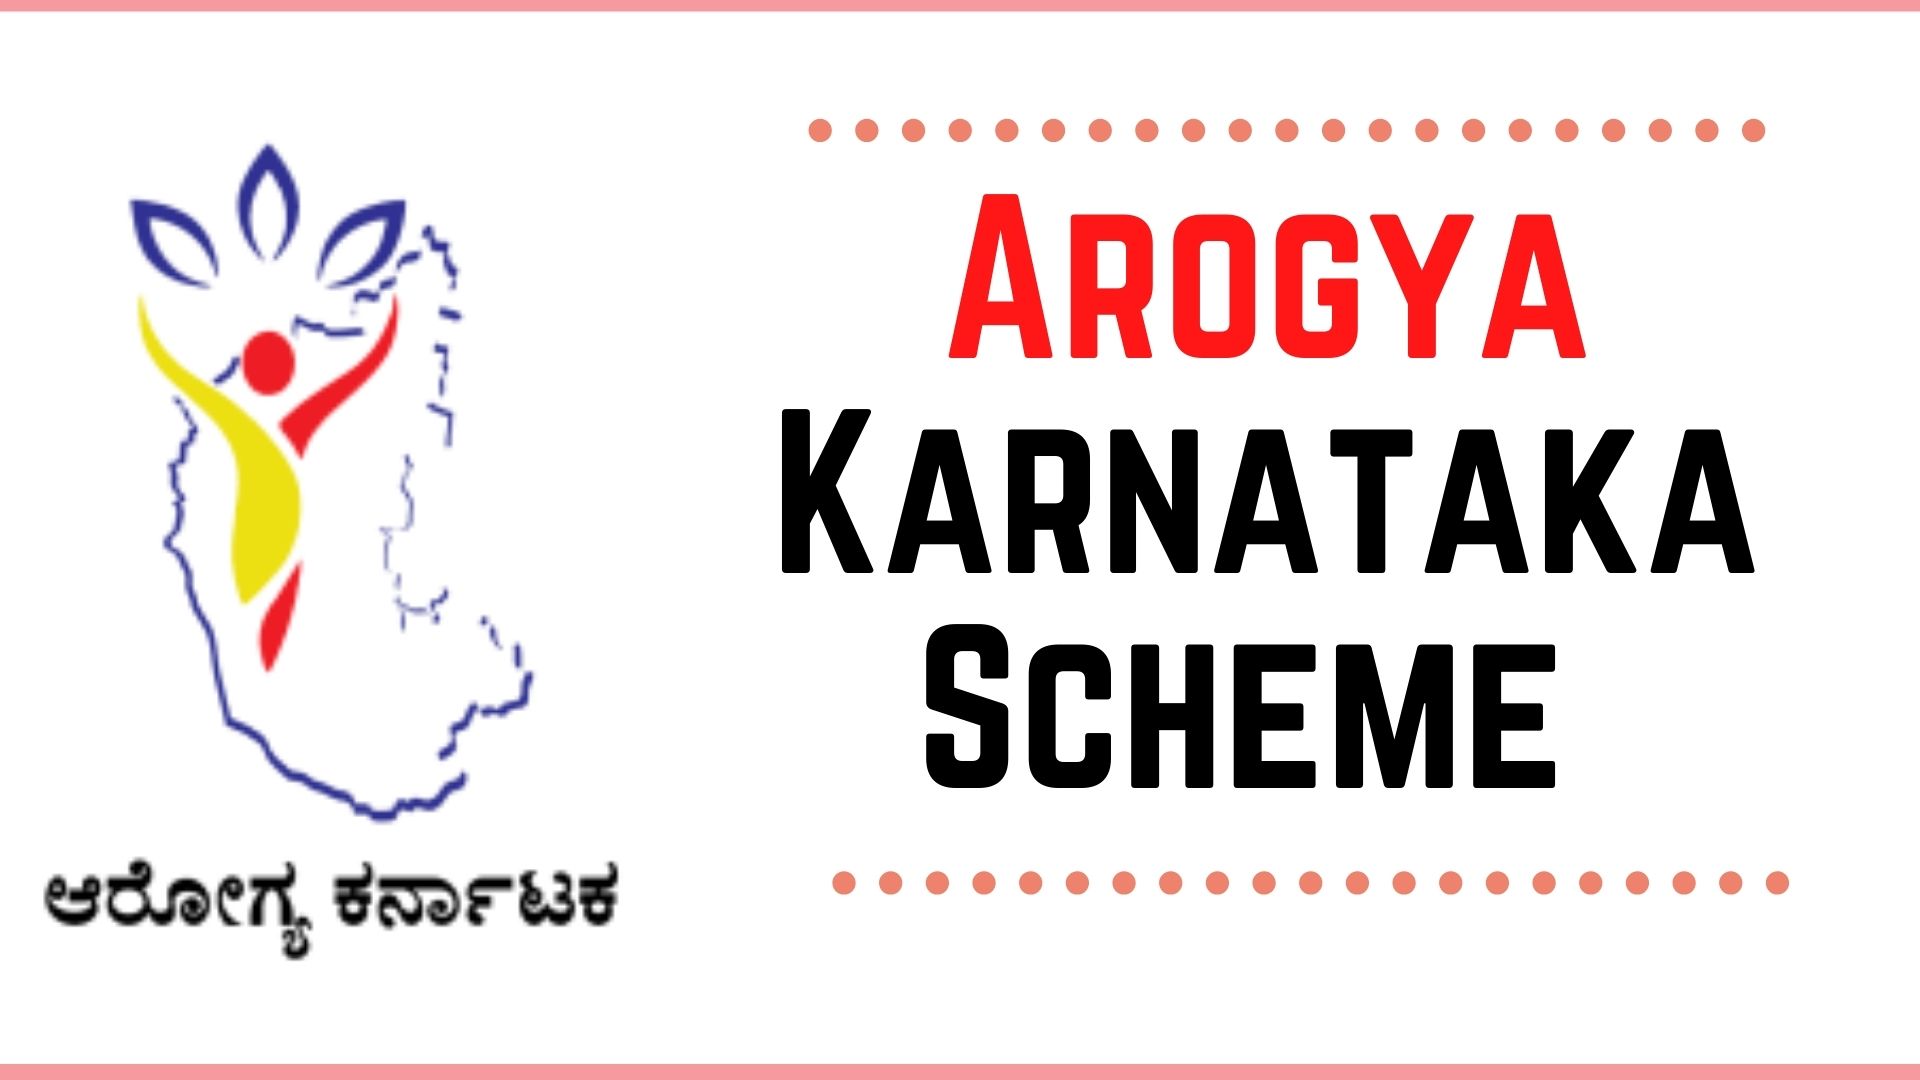 arogya karanataka scheme.jpg